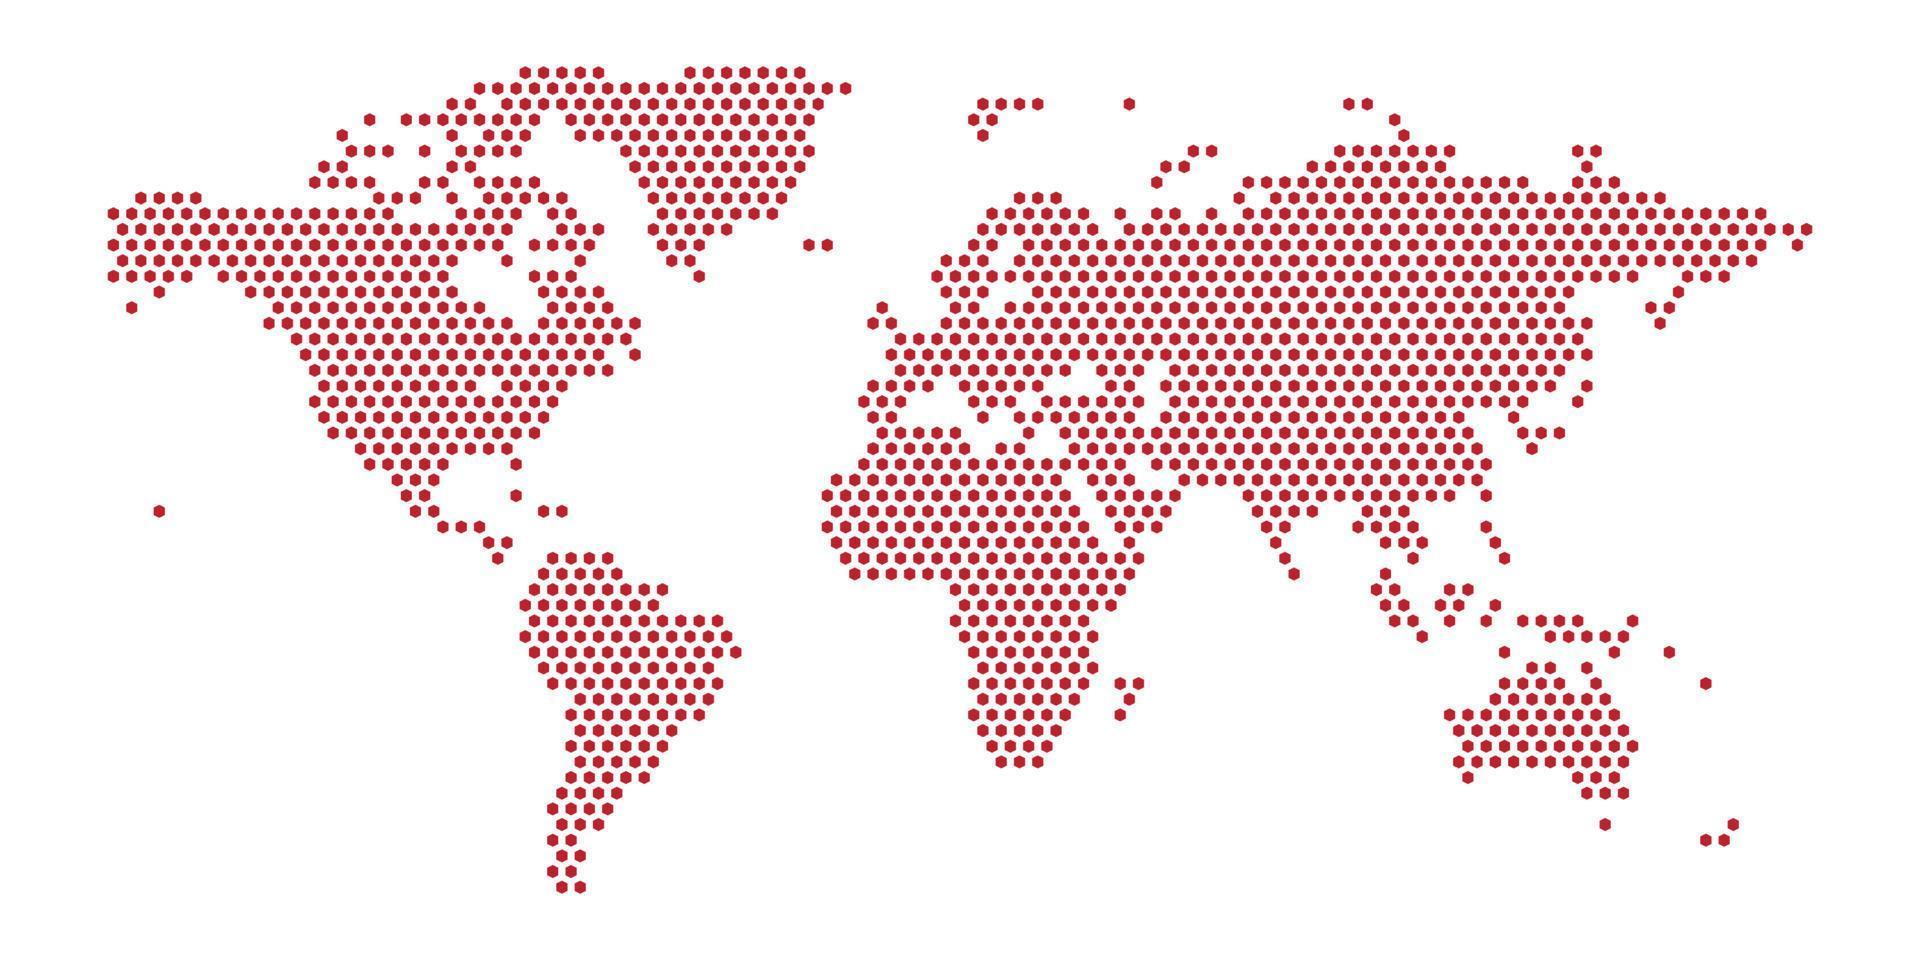 wereldkaart op witte achtergrond. wereldkaartsjabloon met continenten, Noord- en Zuid-Amerika, Europa en Azië, Afrika en Australië vector